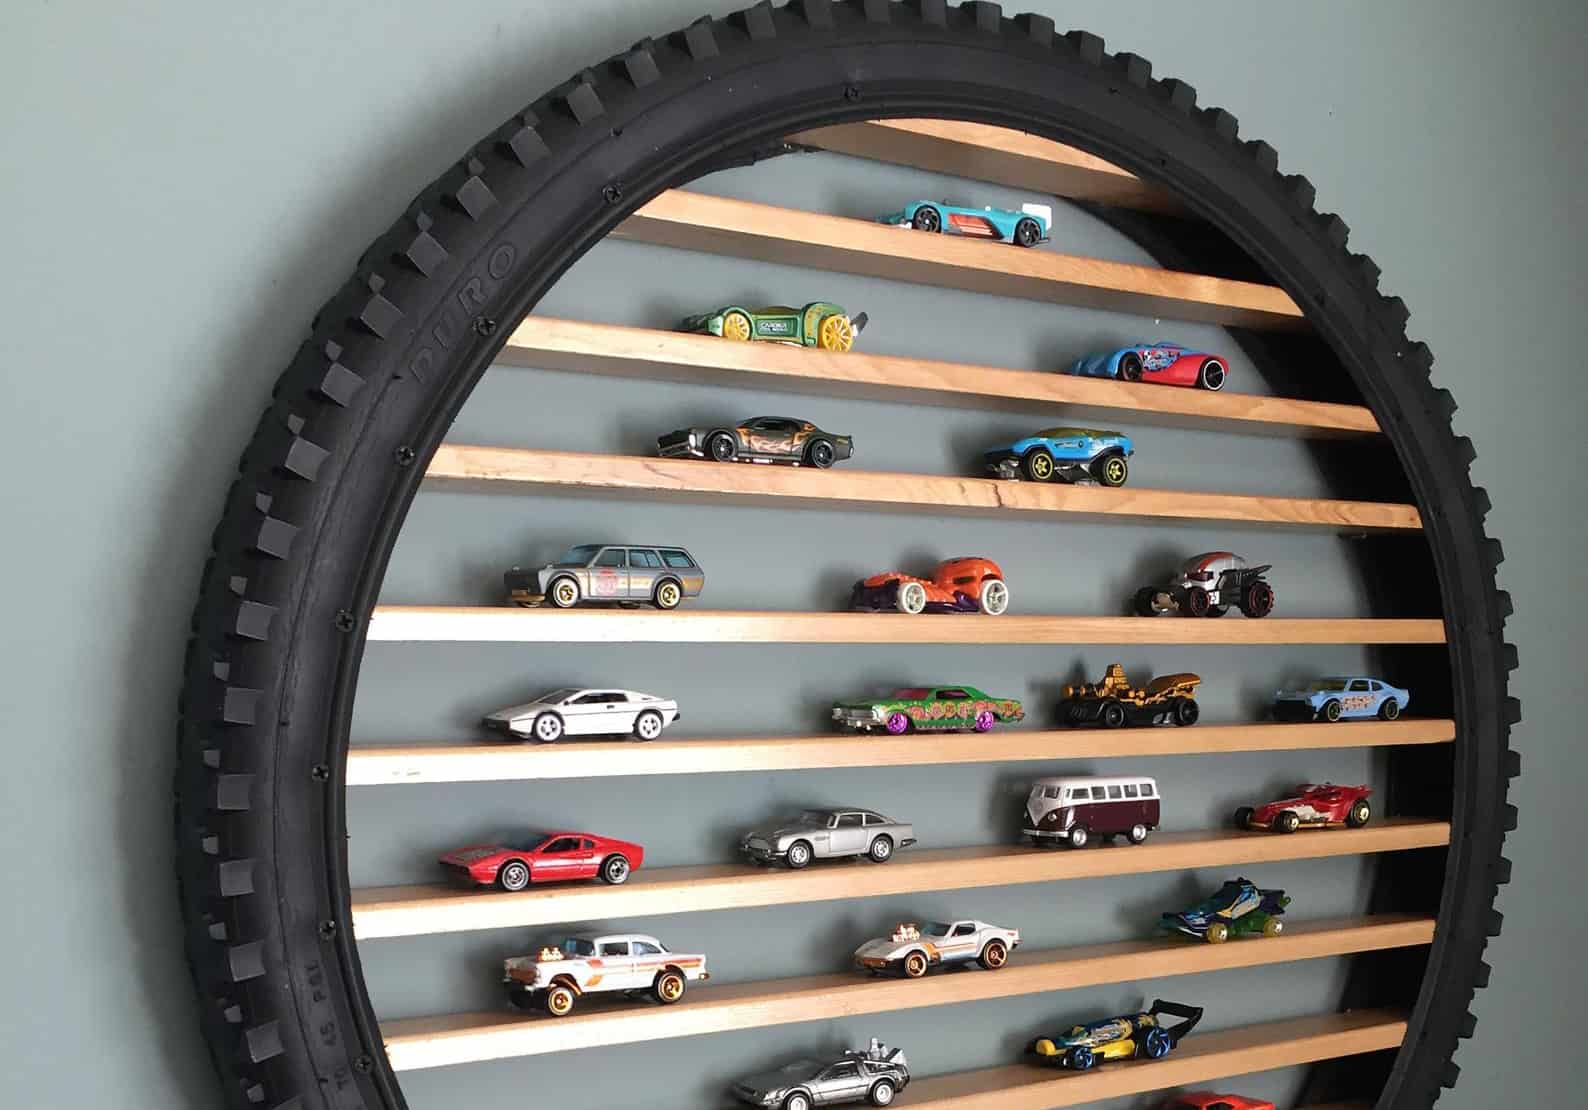 Hot Wheels Wood Toy Car Storage Shelf Organizer for cars